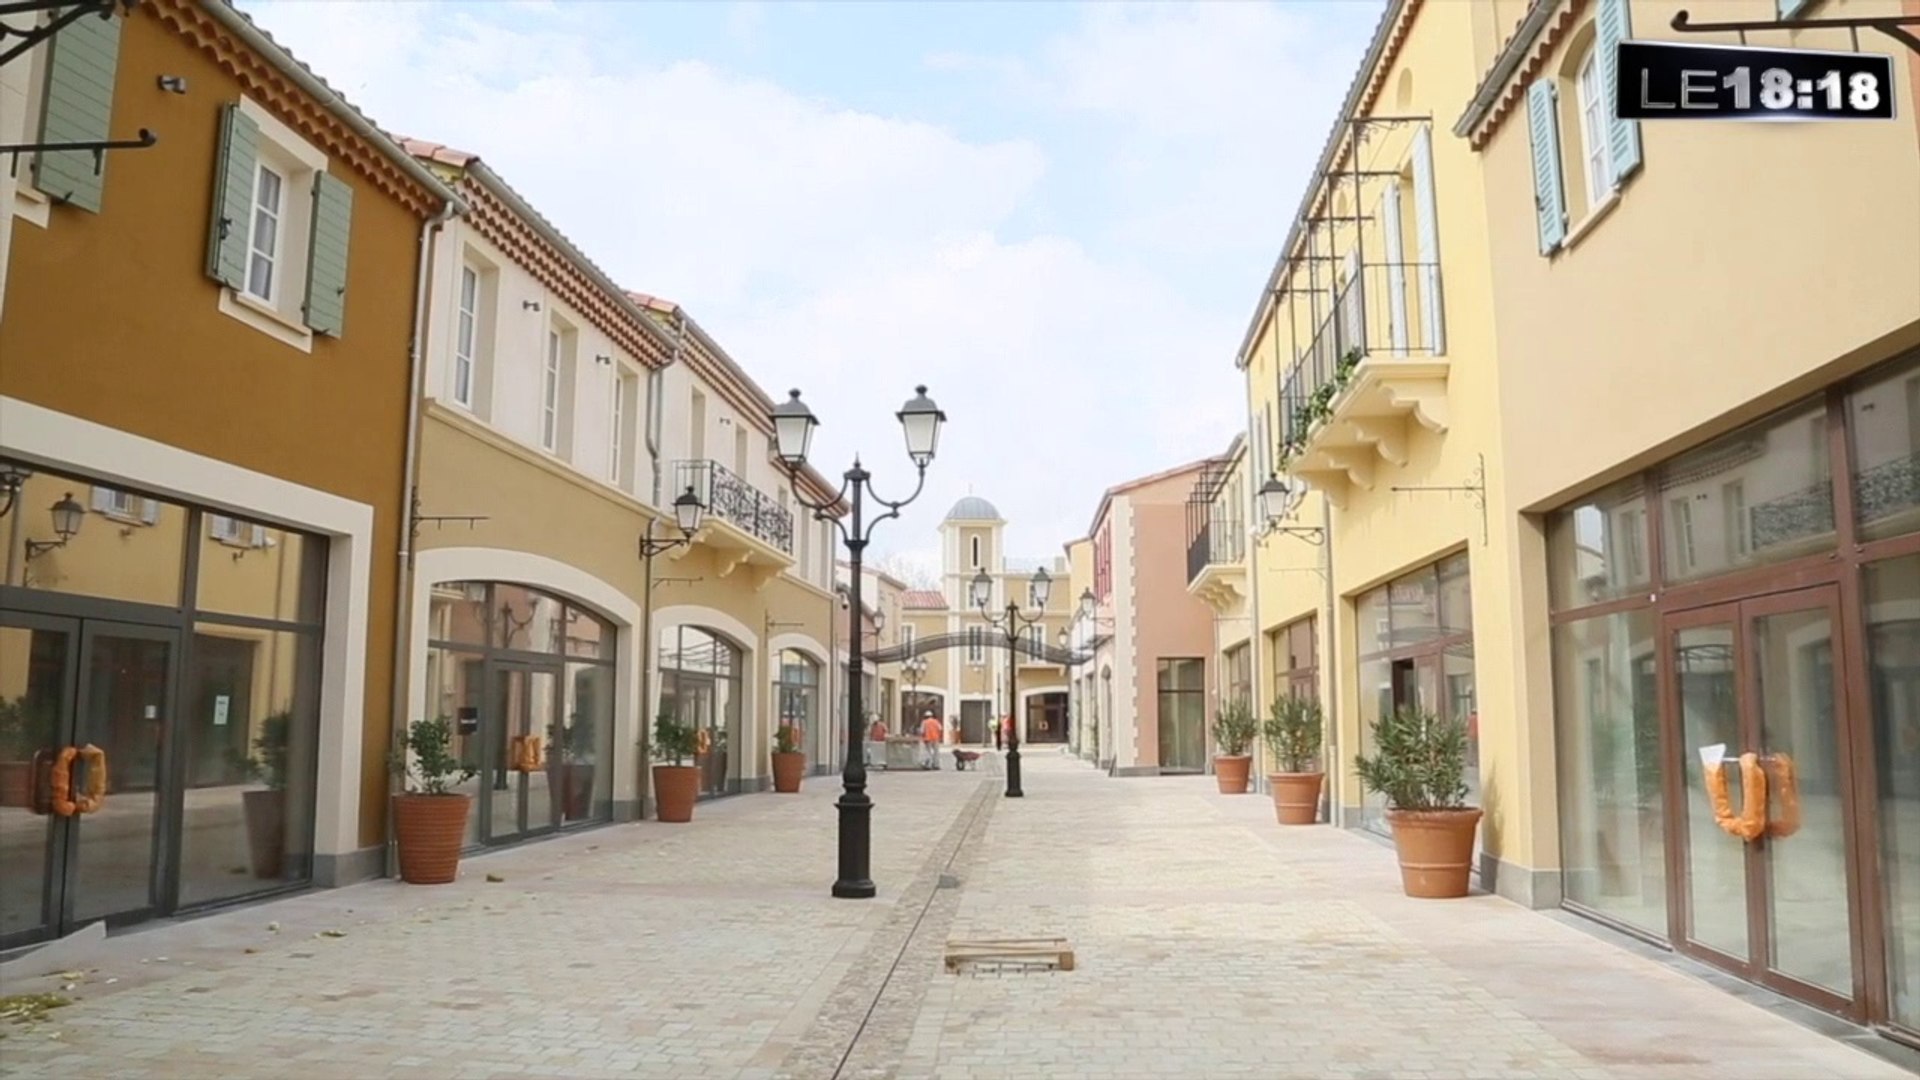 Le 18:18 - Village des marques de Miramas : 80 boutiques de prestige  ouvertes le 13 avril - Vidéo Dailymotion